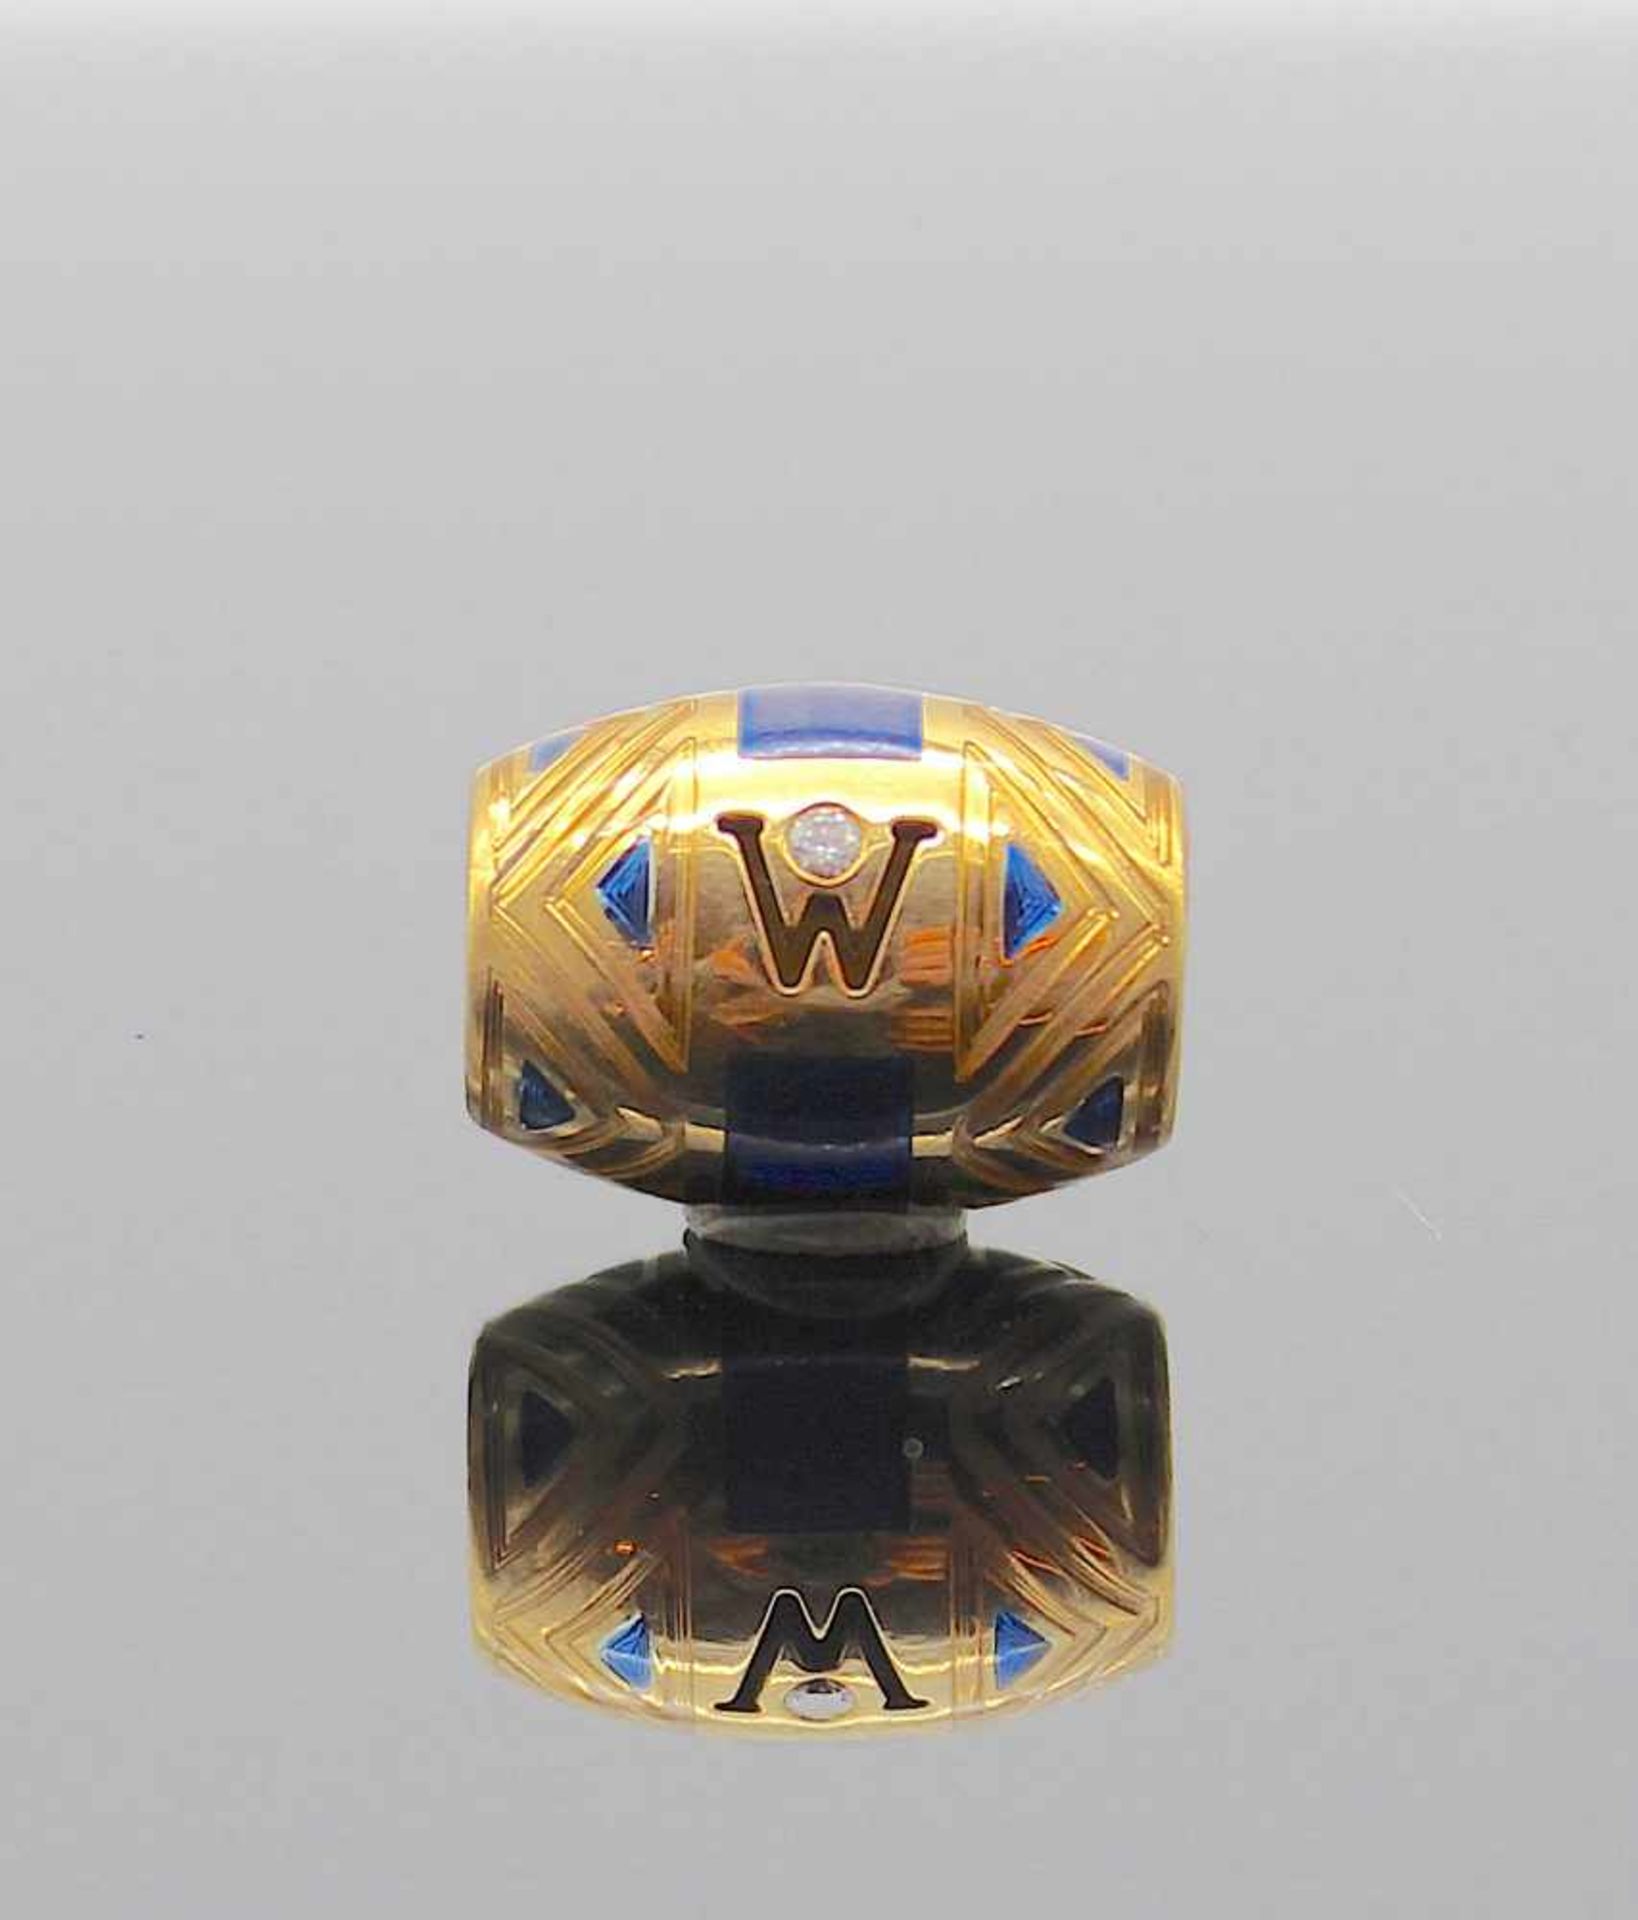 Wellendorff Ronde Anhänger in 750er Gold mit einem Brillanten und blauer Emaille, Gewicht ca. 9,6 g, - Image 4 of 4